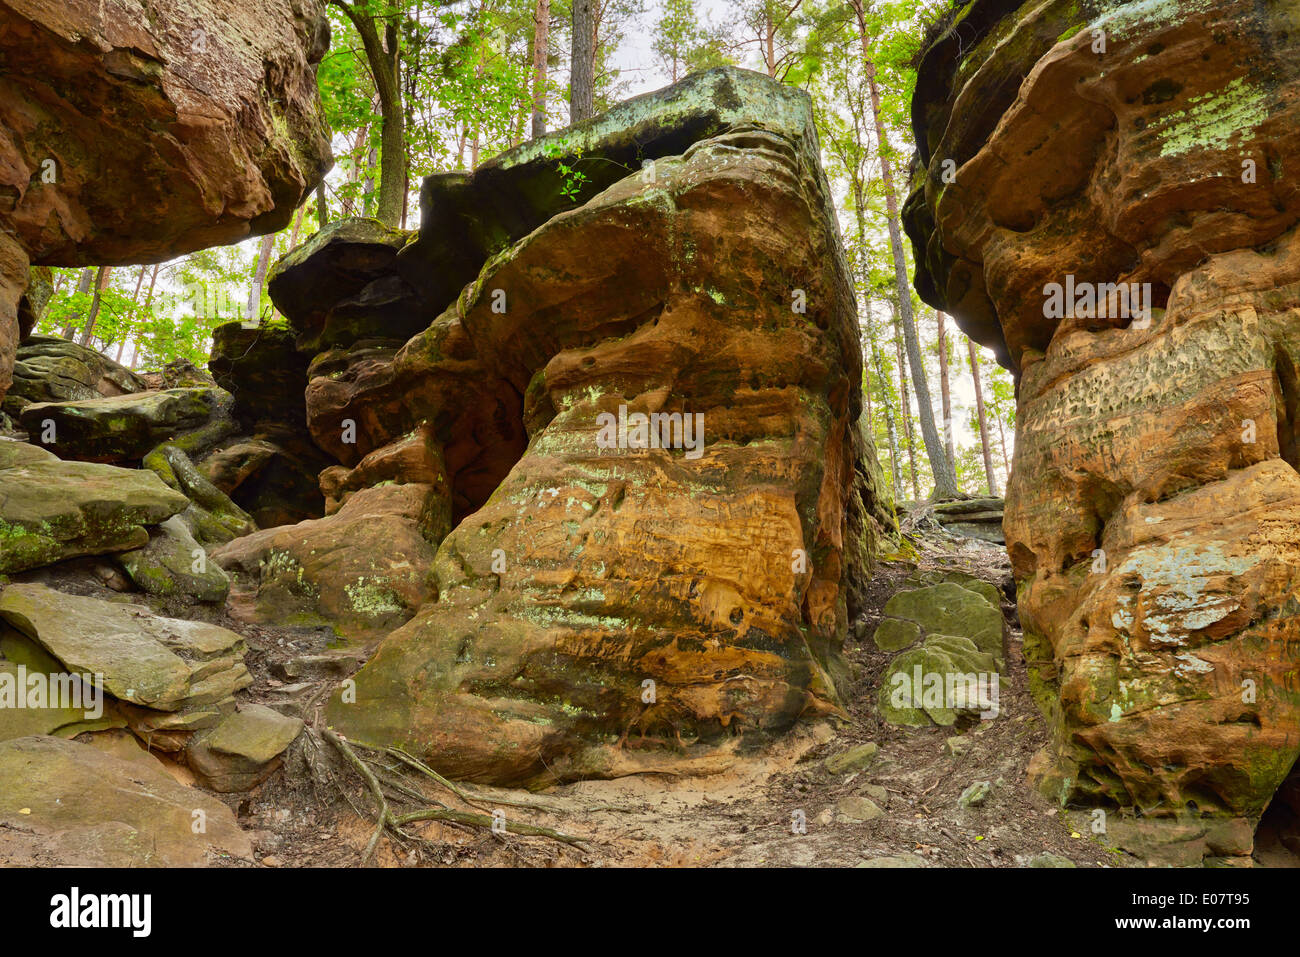 La beauté de la Terre. L'enfer des rochers près de ancienne Nieklan, Pologne. Caractéristiques géologiques étonnantes réserver. Banque D'Images